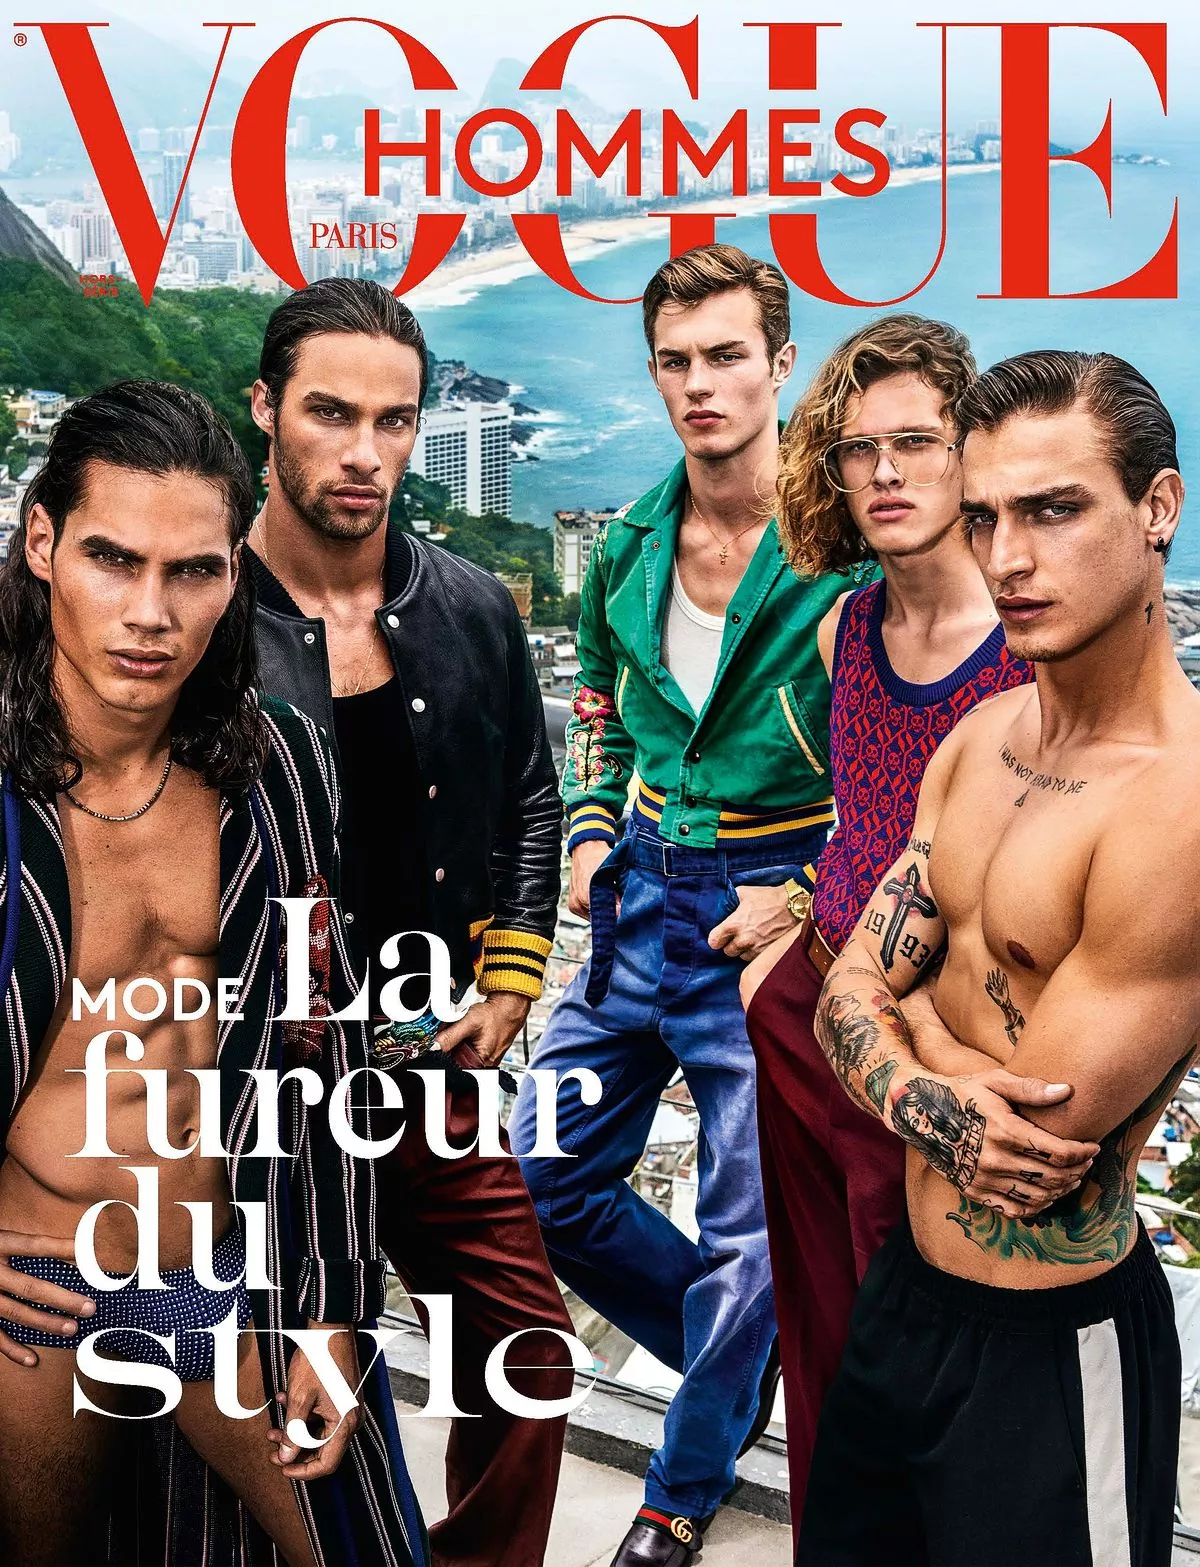 Обложка журнала Vogue Hommes Paris, фото Марио Тестино